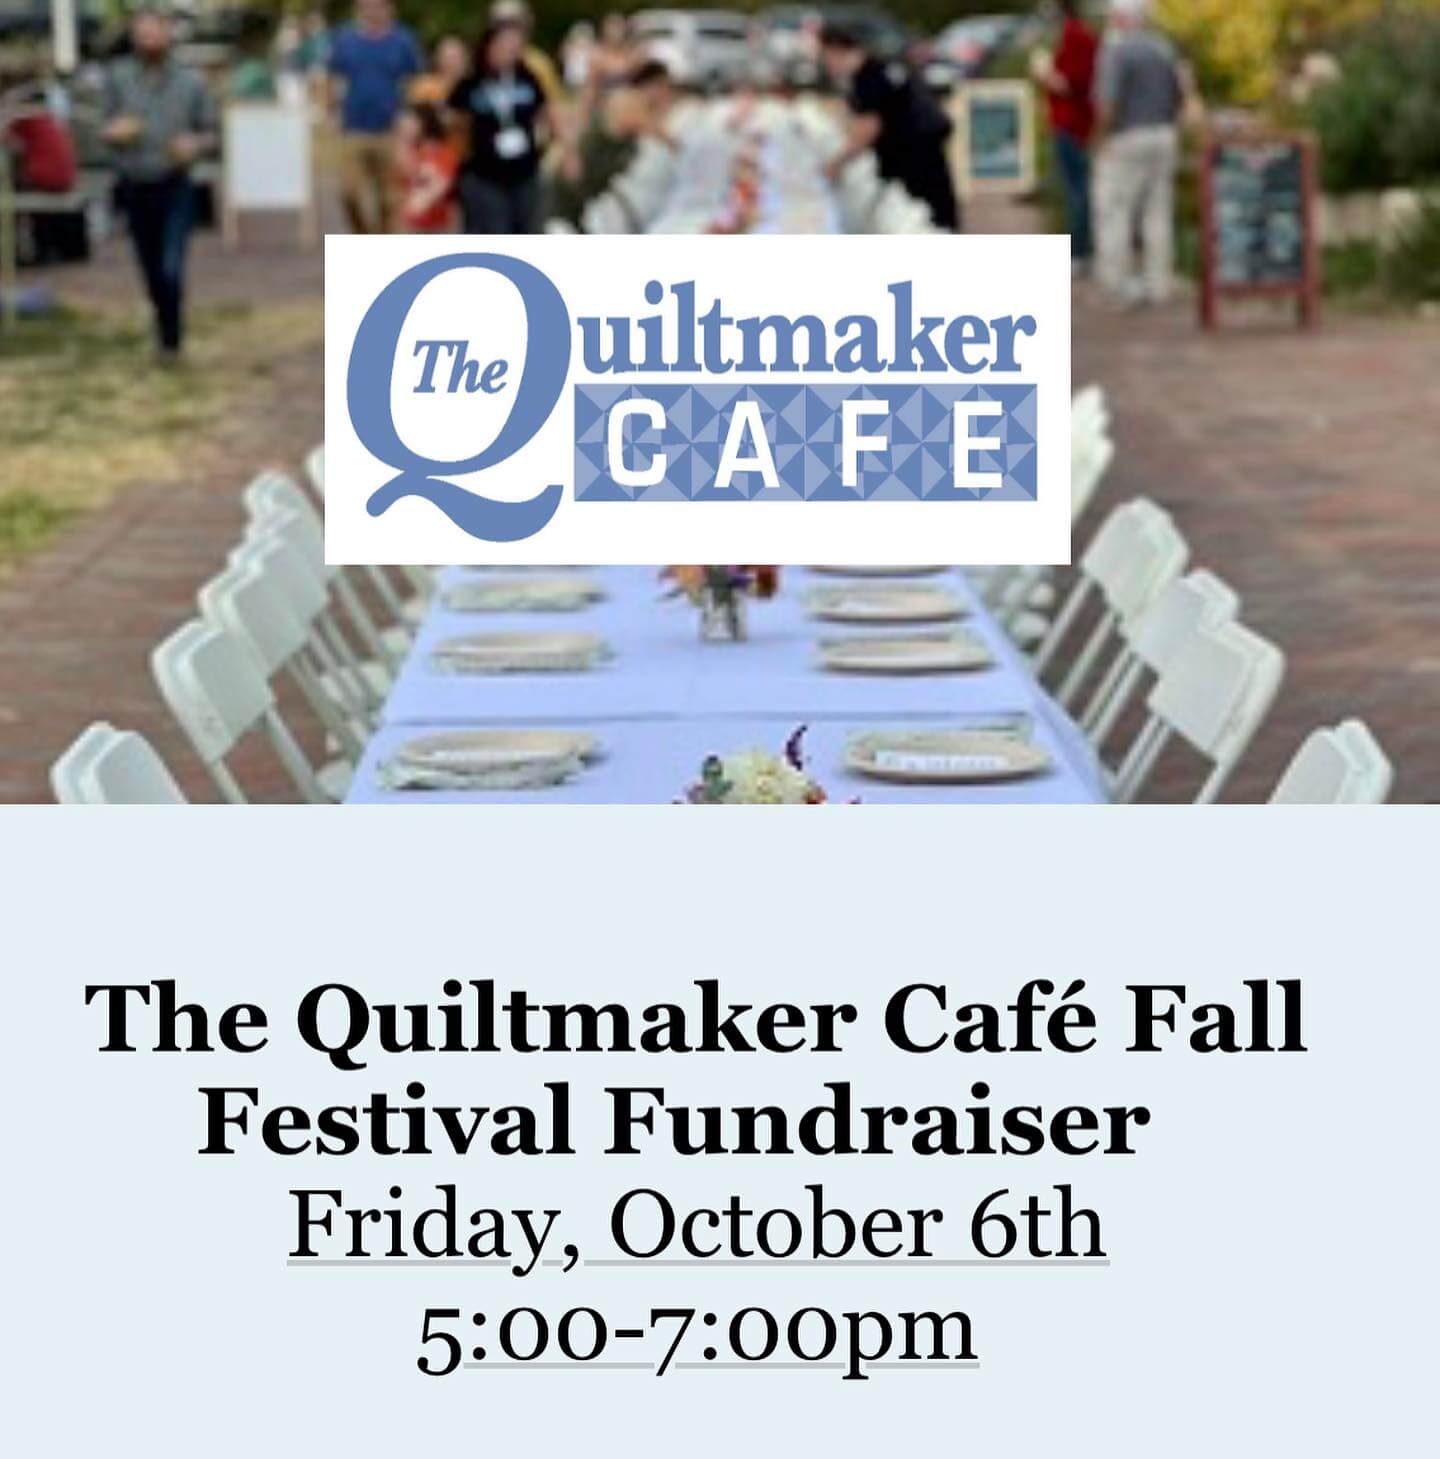 Quiltmaker Cafe fundraiser